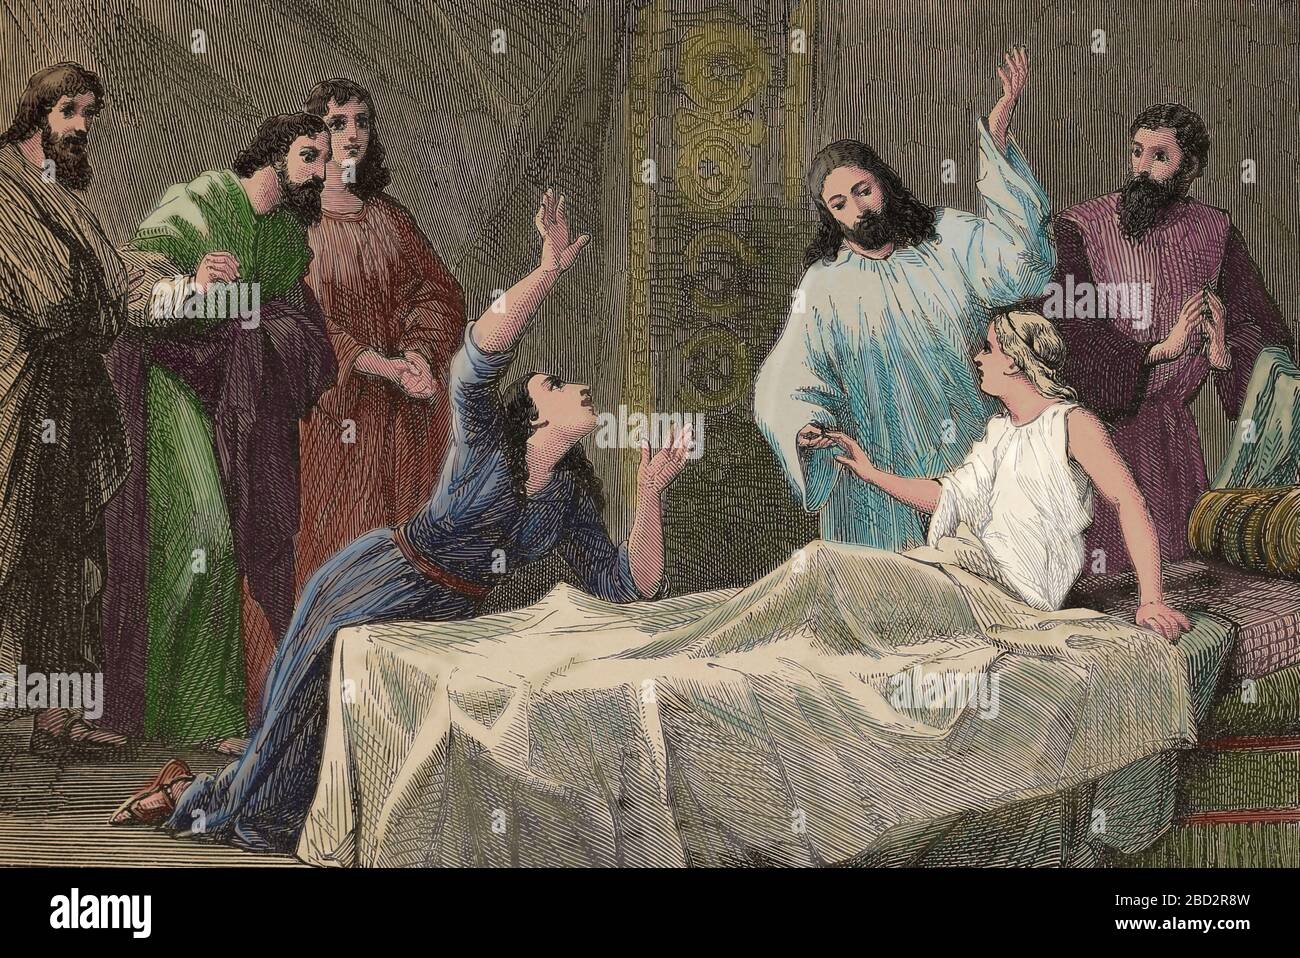 Erziehung von Jairu Tochter. Wunder Jesu in den Evangelien Markus, Mattheus und Lukas. Gravur, 19. Jahrhundert. Stockfoto